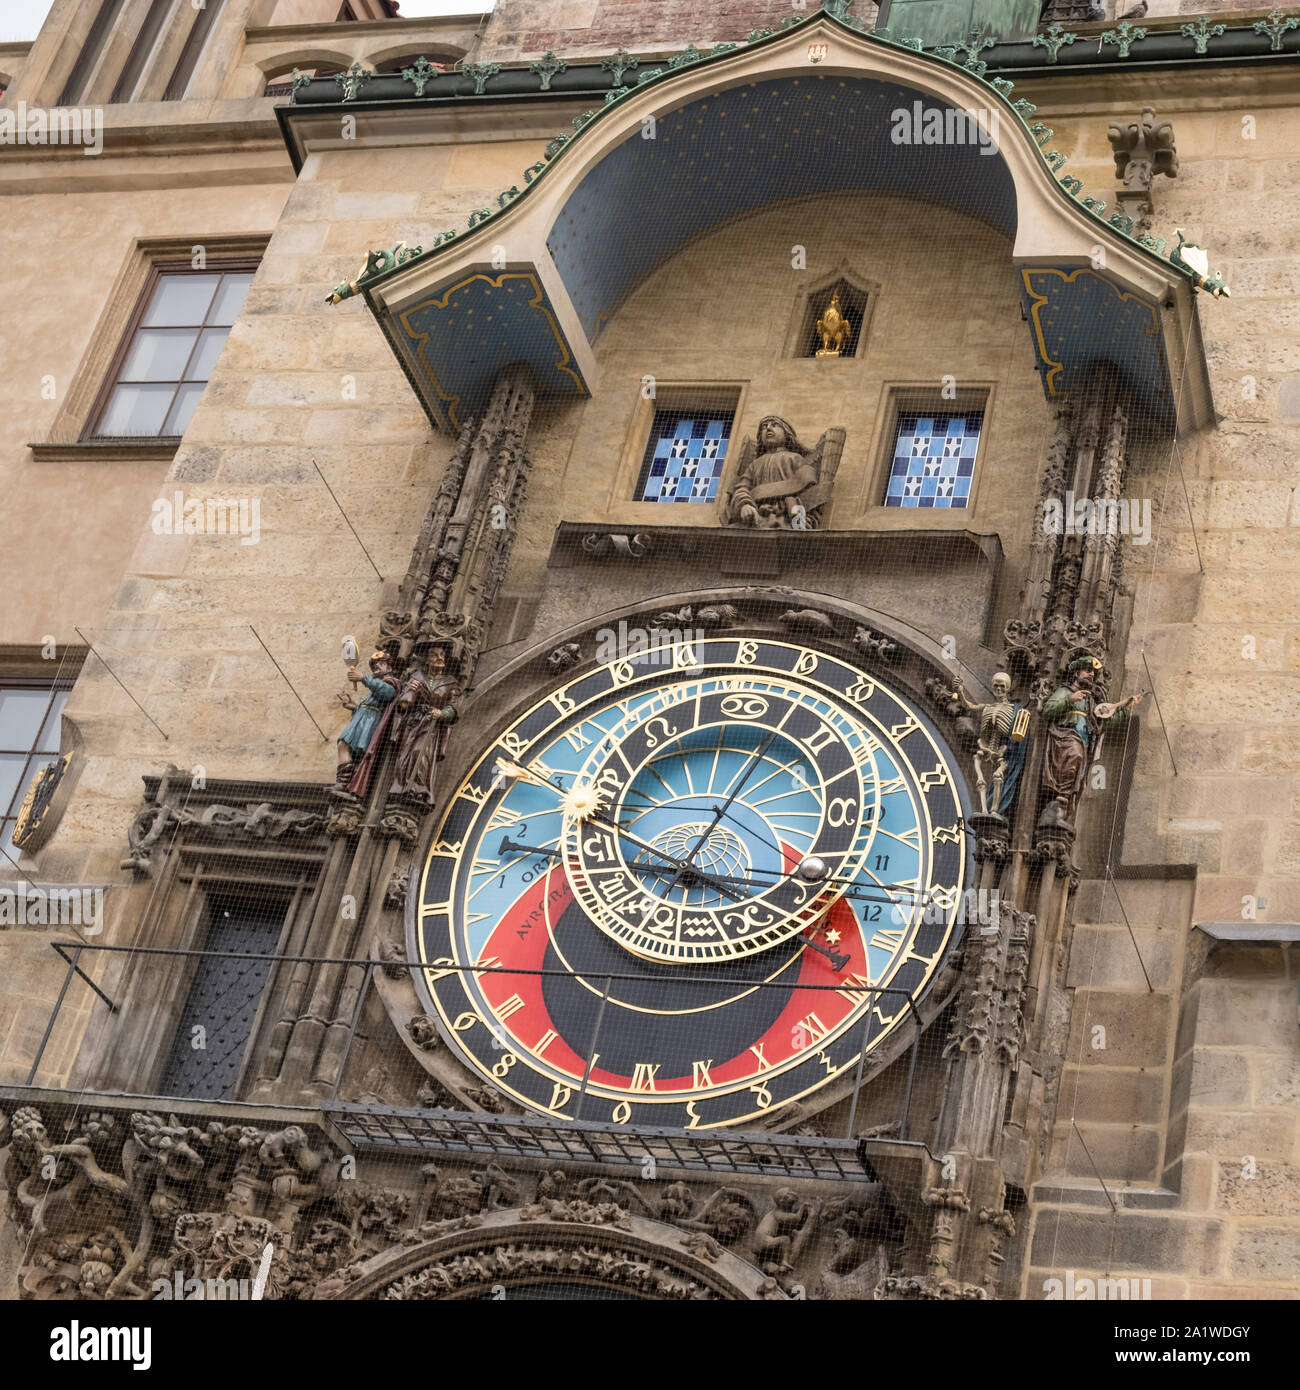 Astronomische Uhr in Prag (Prager Orloj), eine mittelalterliche Uhr in der Altstädter Ring, Prag, Tschechische Republik Stockfoto